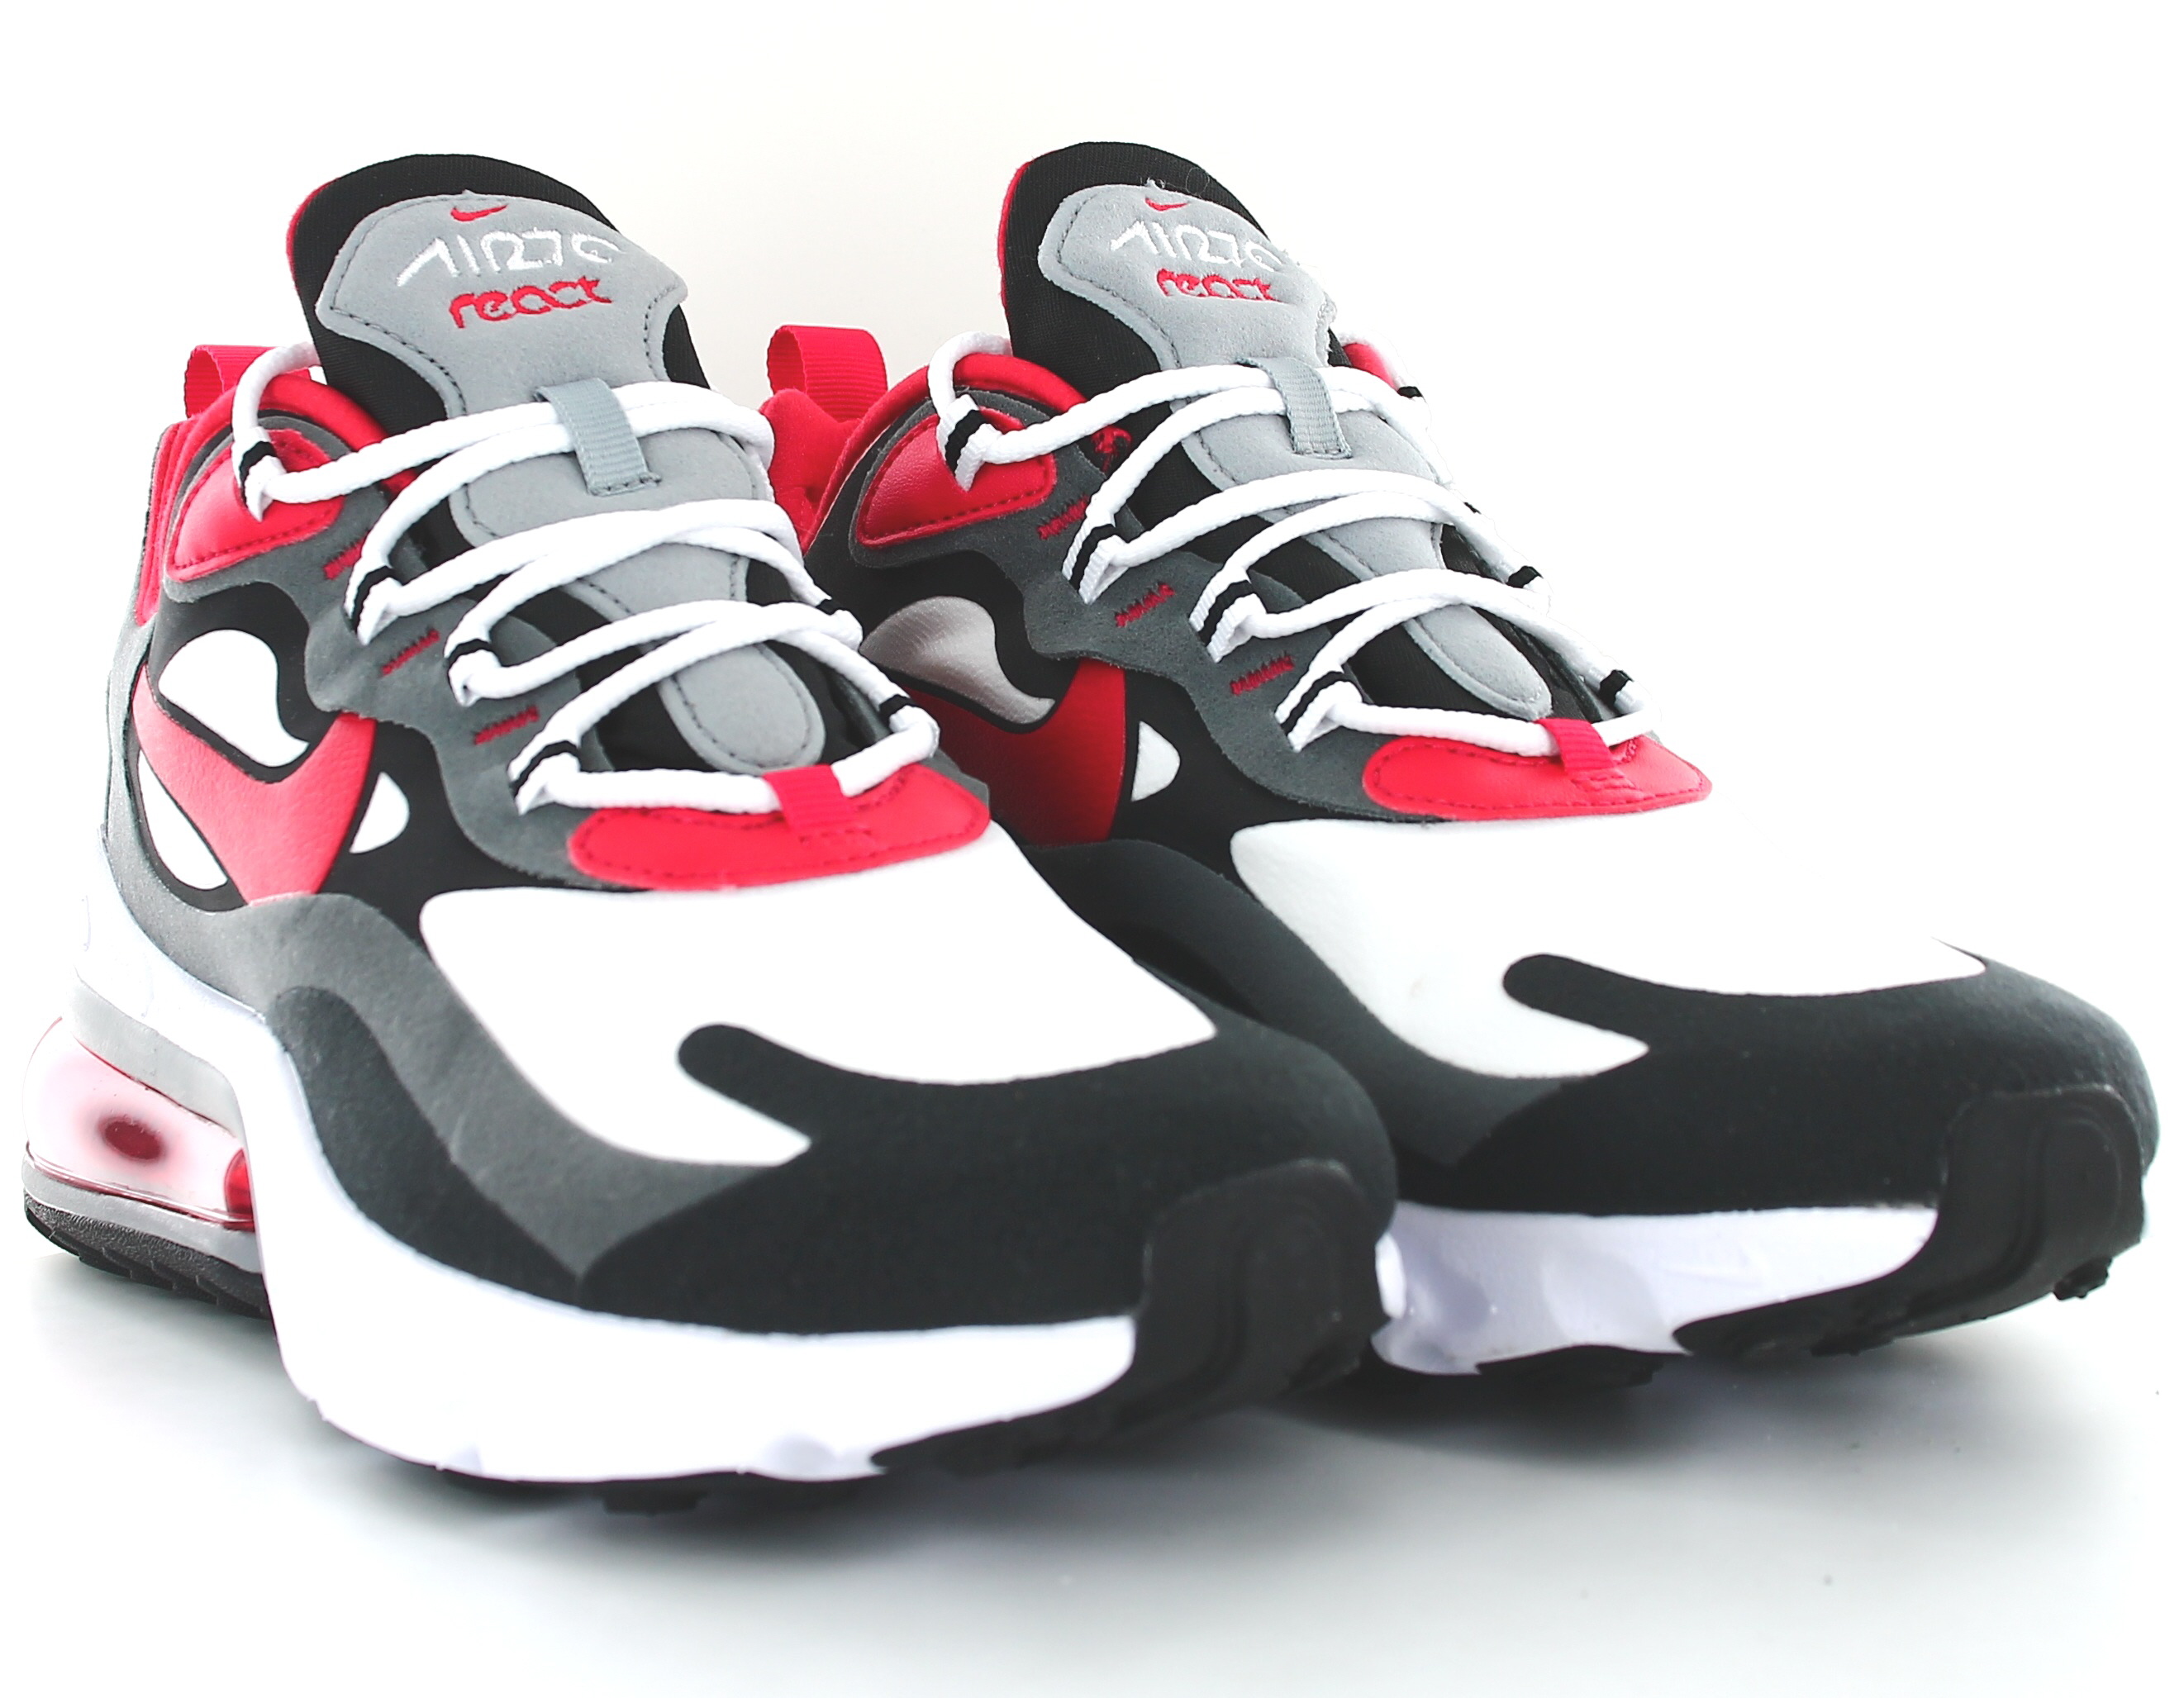 Nike Air Max 270 React Garçons Chaussures, Gris froid/blanc